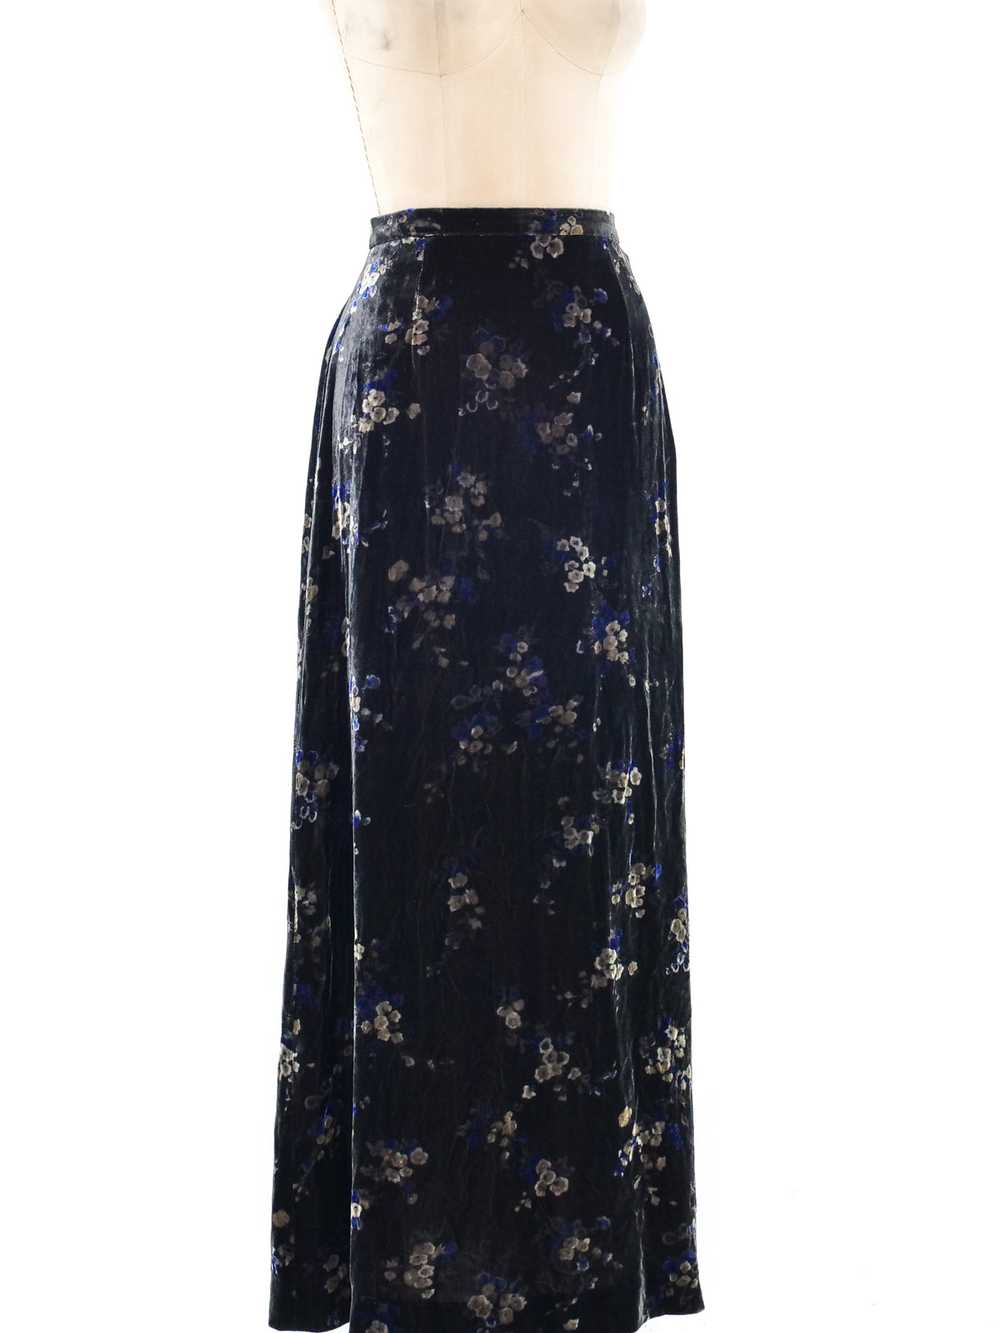 Ungaro Floral Velvet Skirt - image 2